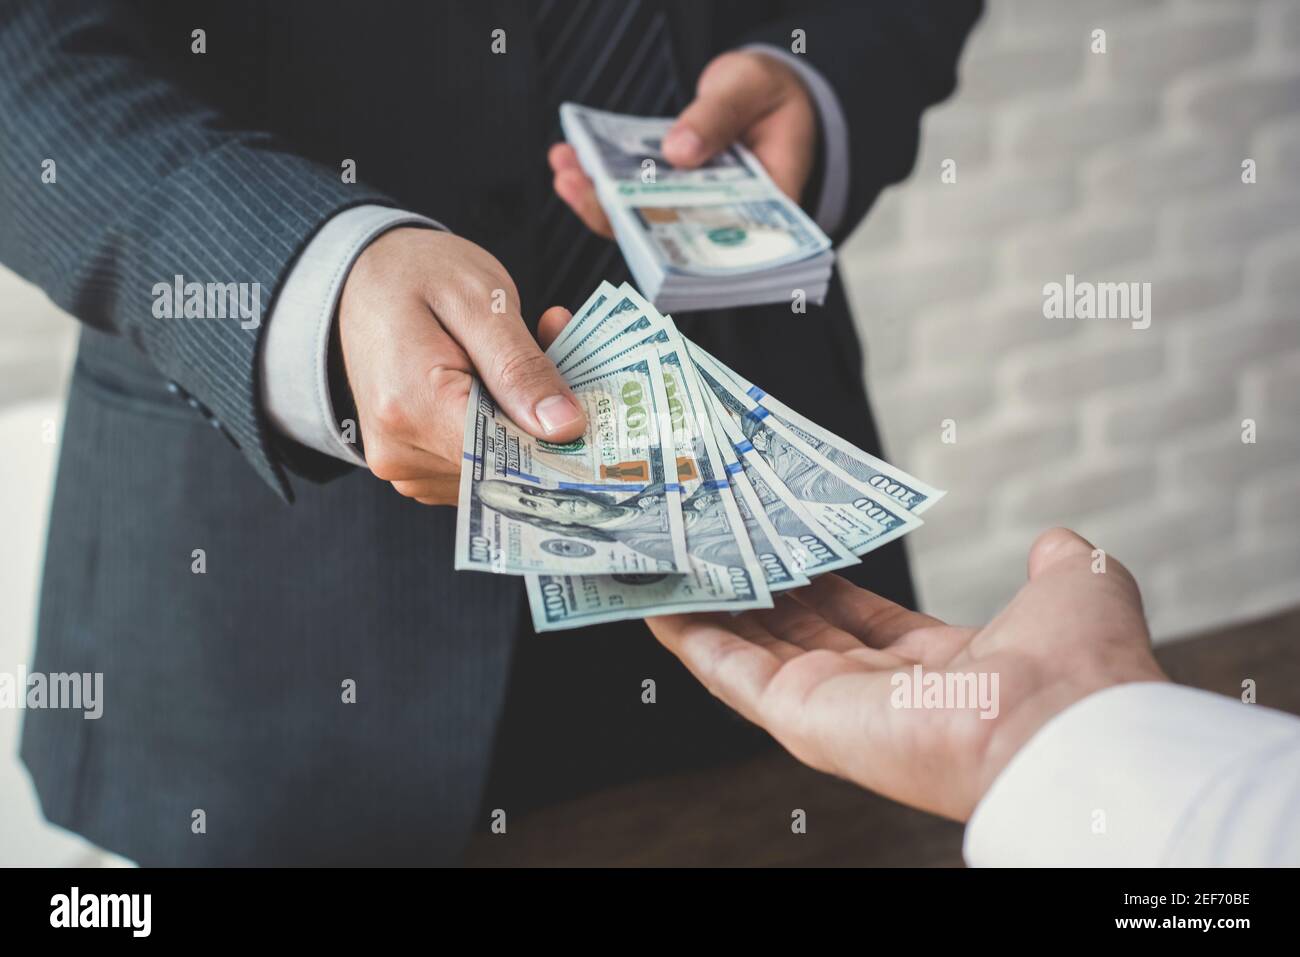 Uomo d'affari che dà o paga i soldi ad un uomo, le fatture del dollaro degli Stati Uniti - prestito, corruzione e concetti finanziari Foto Stock